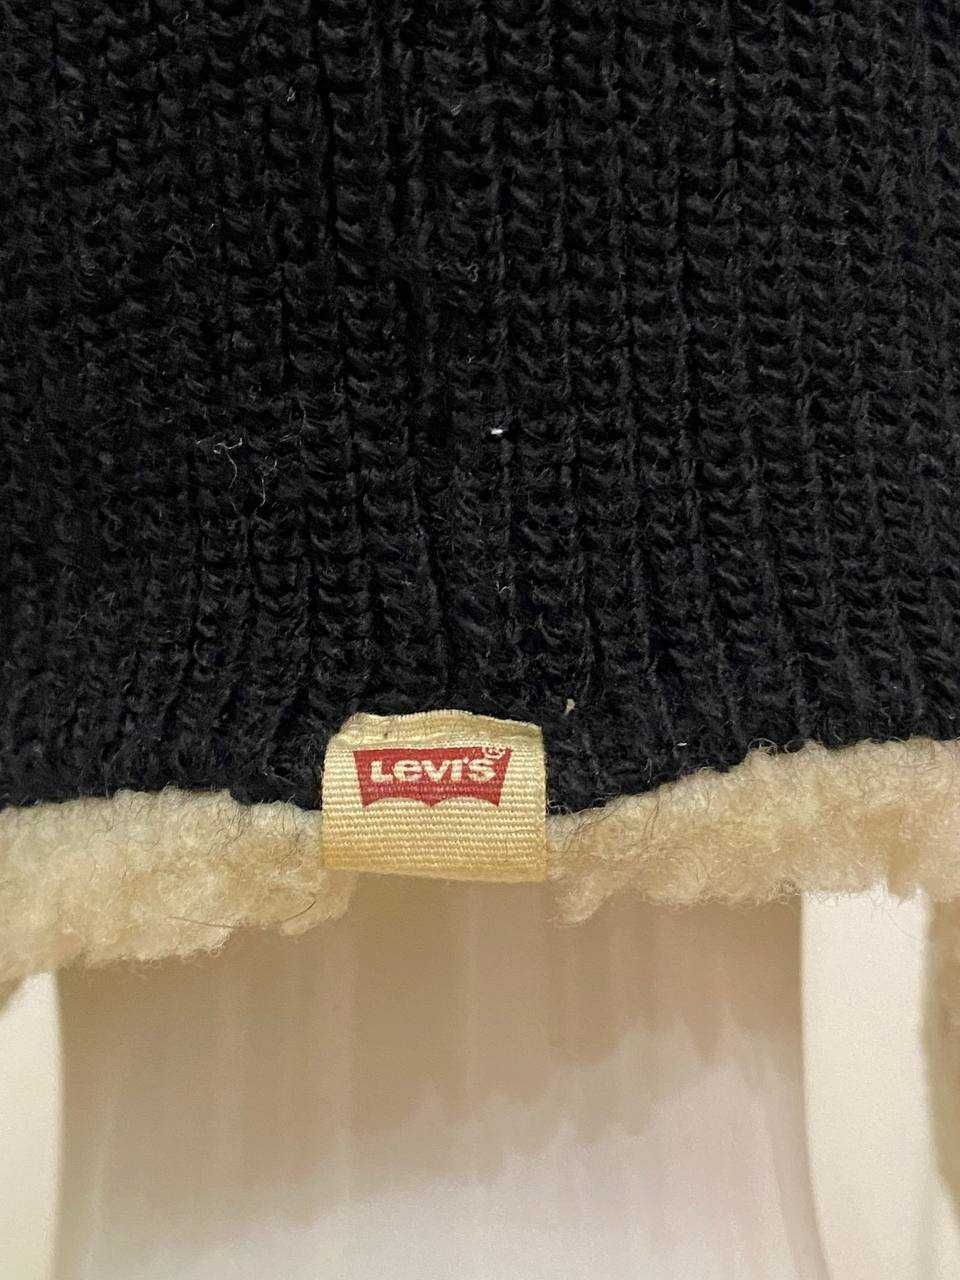 Levi's uszatka męska czapka zimowa ciepła akrylowa narciarska